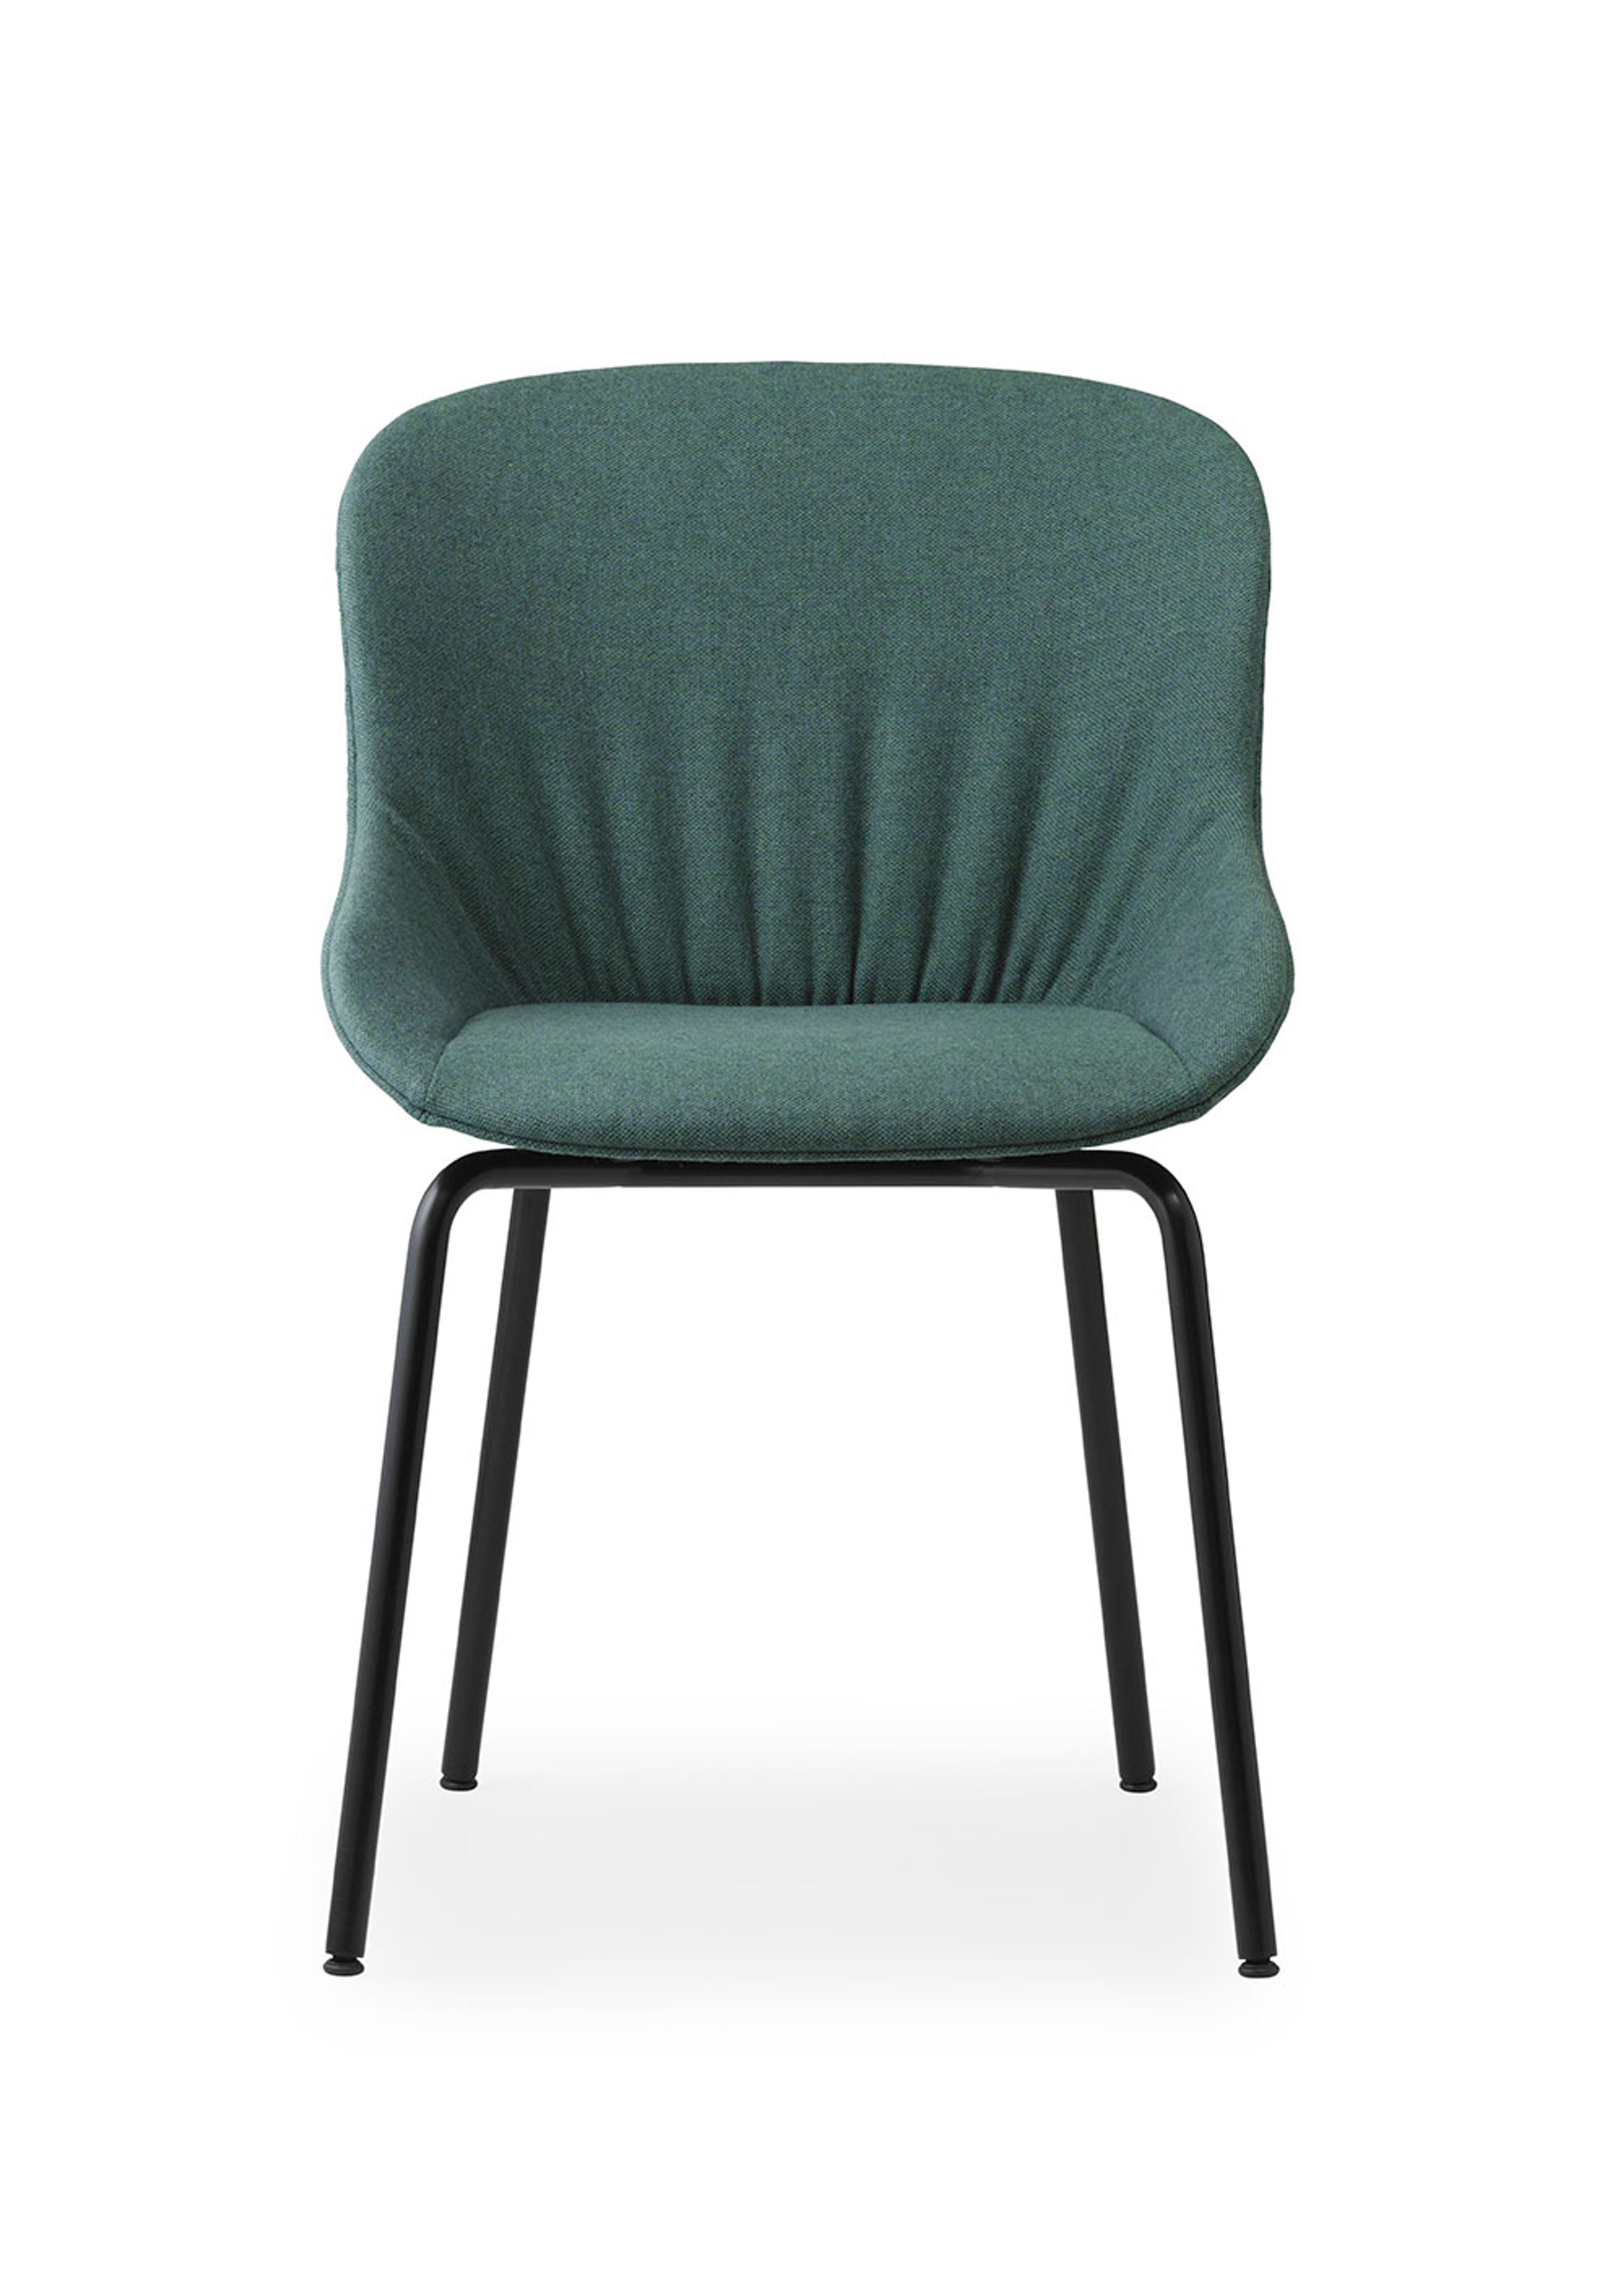 Normann Copenhagen - Esstischstuhl - Hyg Comfort Chair Full Upholstery - Base: Steel / Black/Main Line Flax